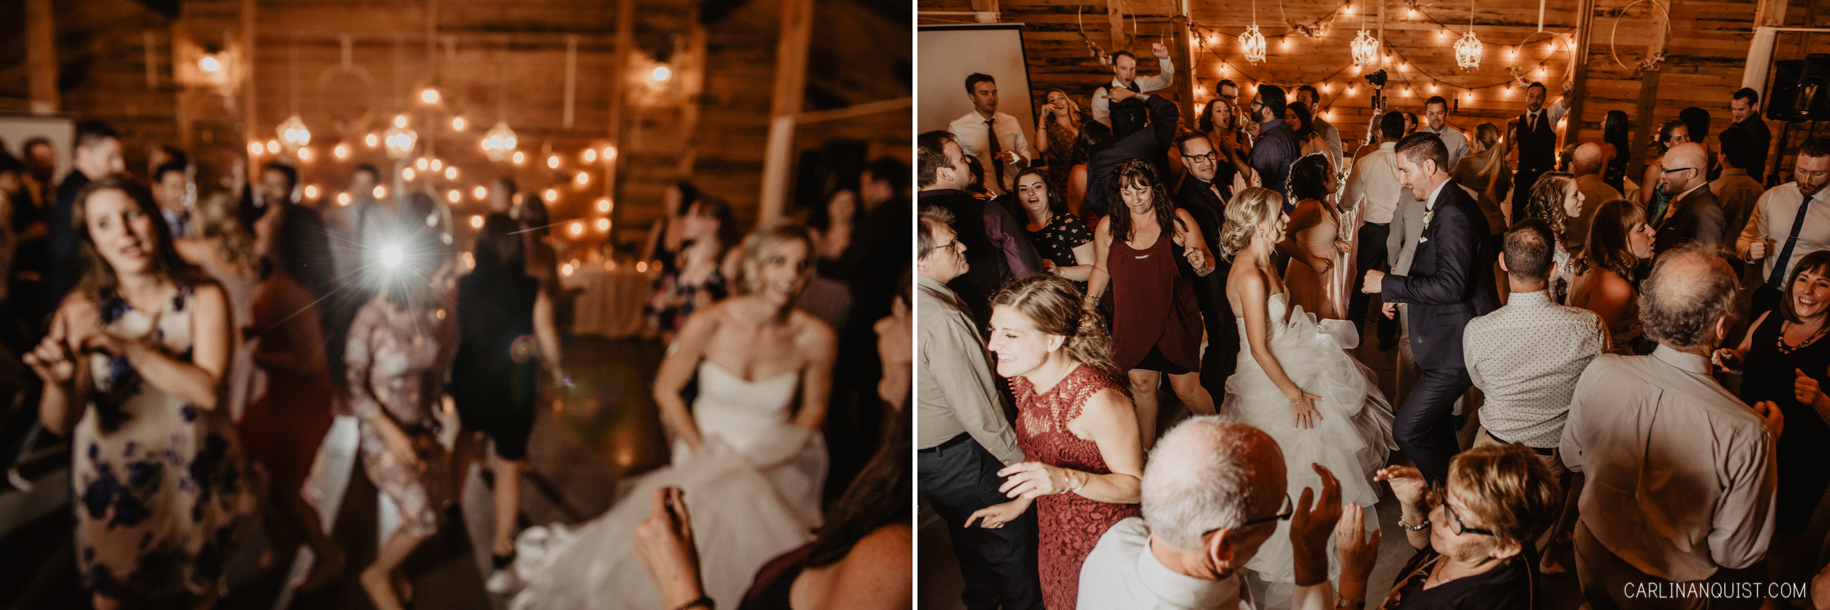 Dancing | Willow Lane Barn Wedding Photos